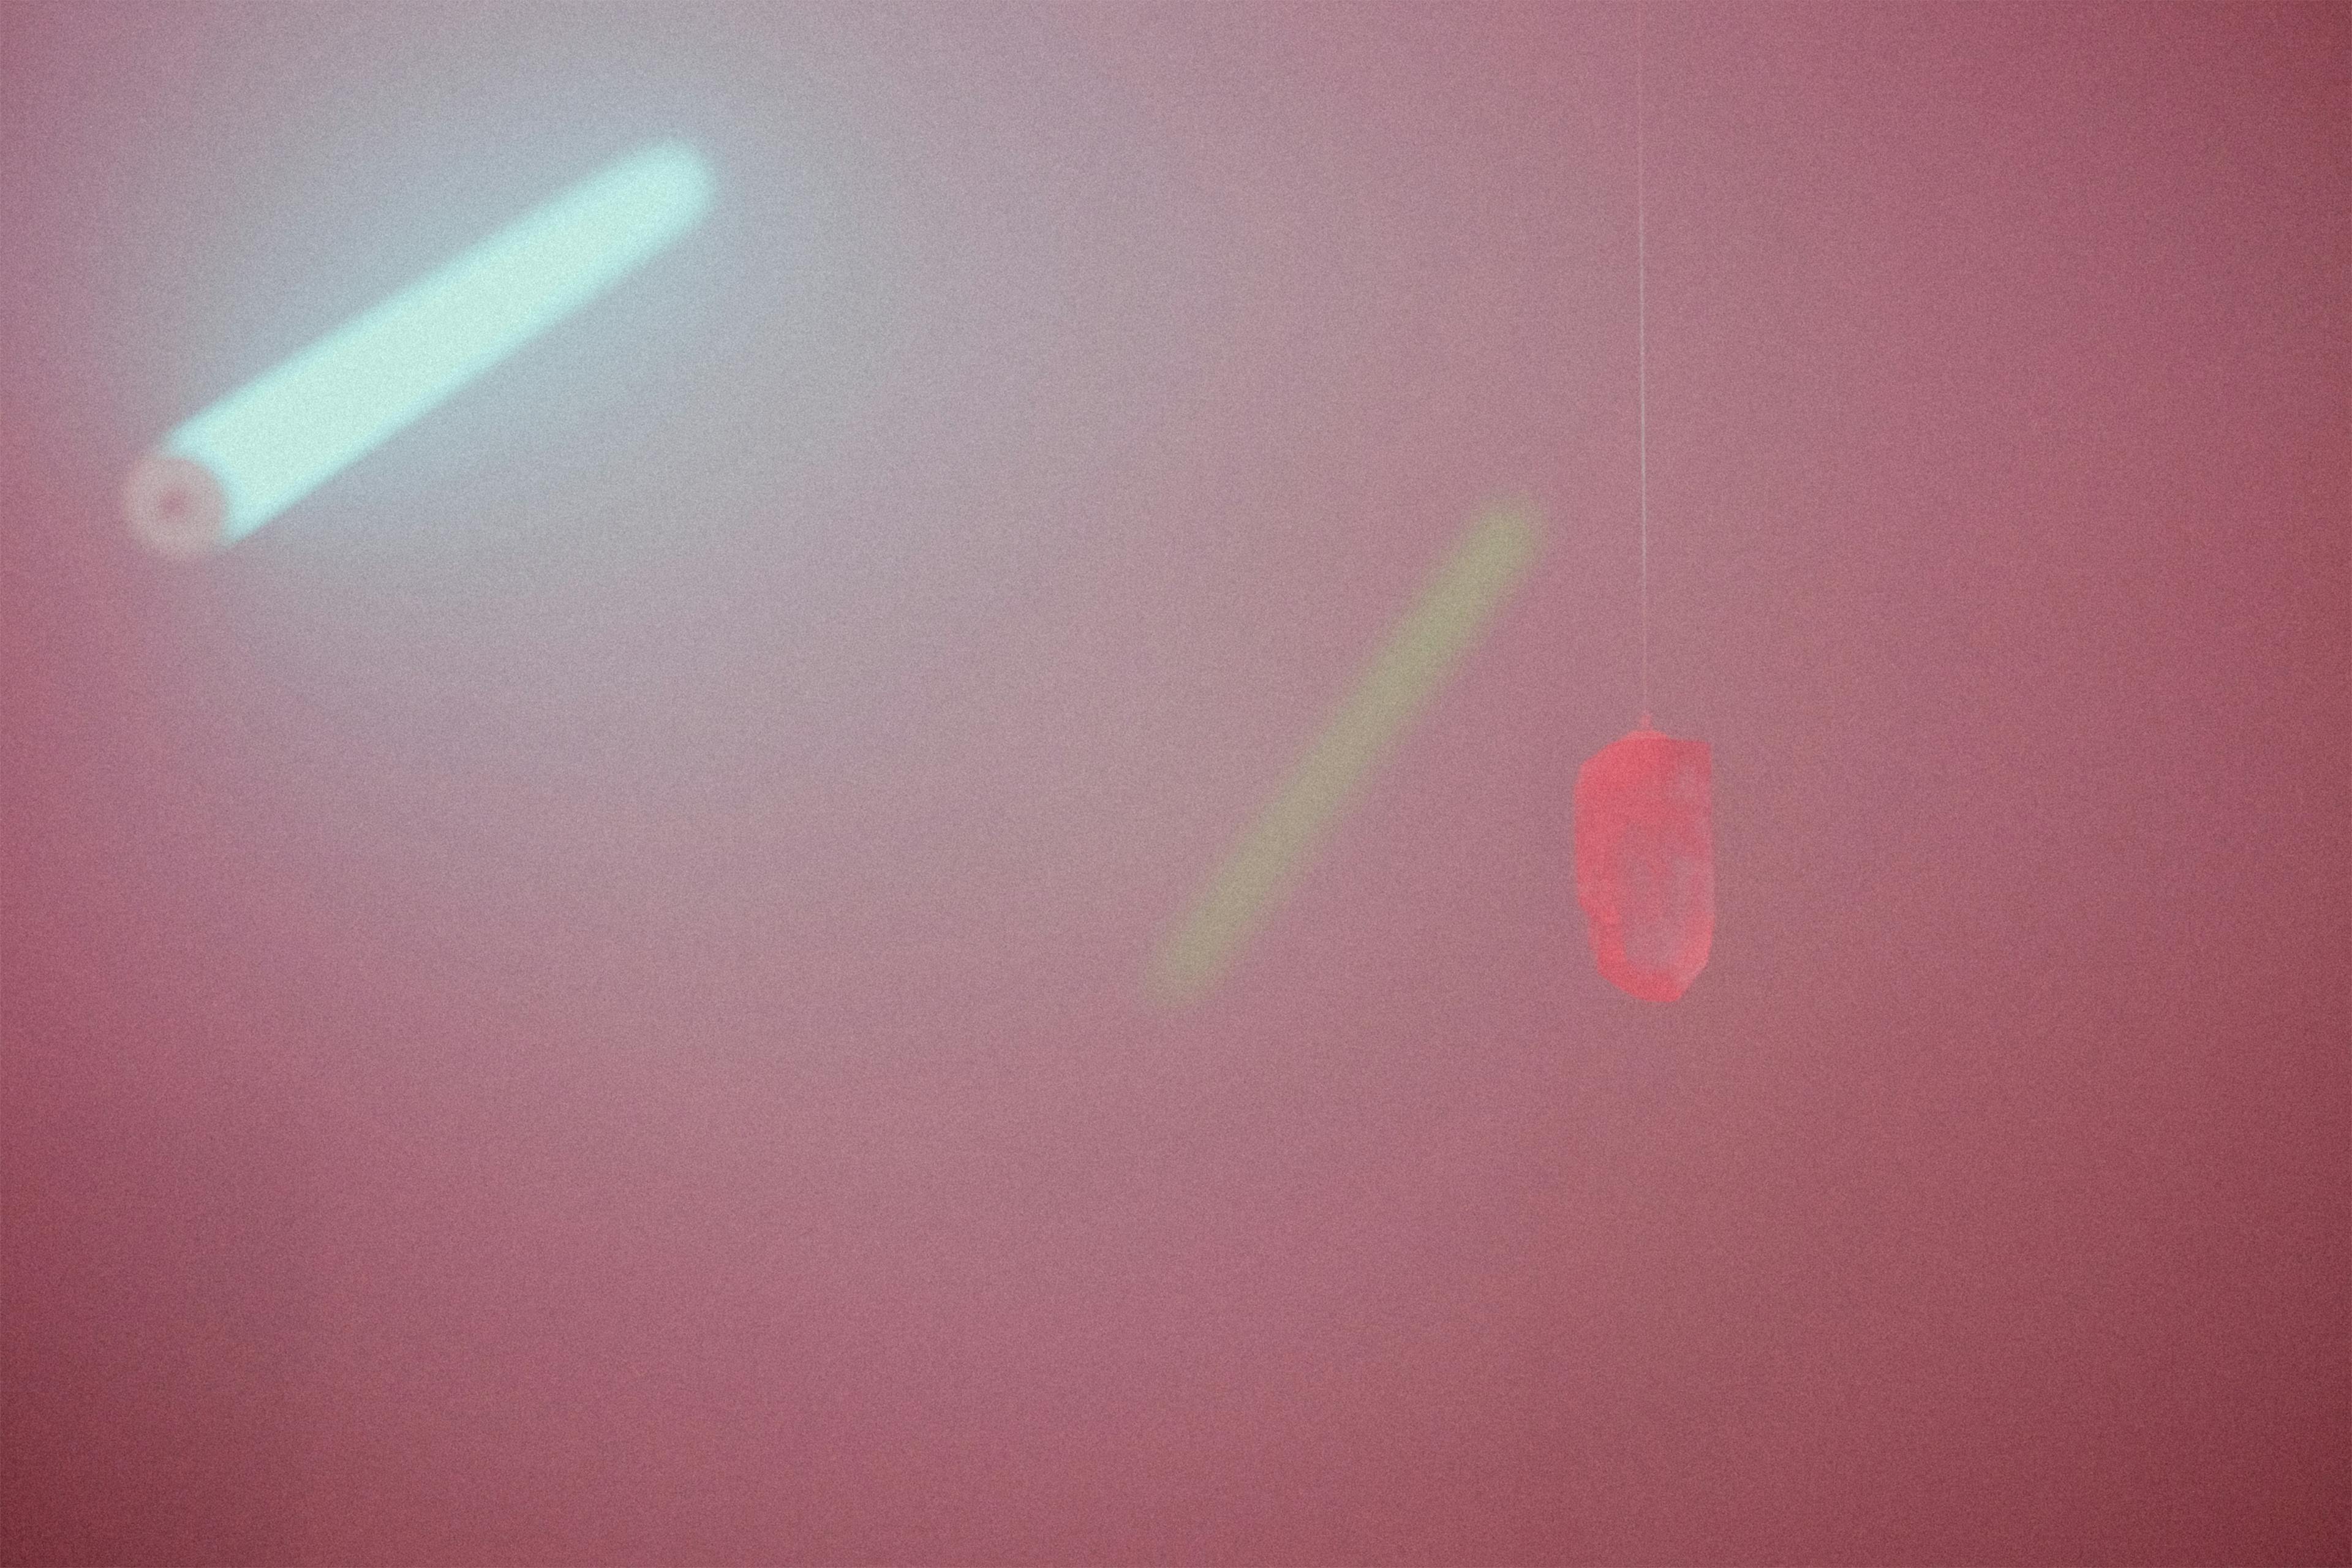 upcomingstudio-time-flies-crystal-neon-lights-red.jpg